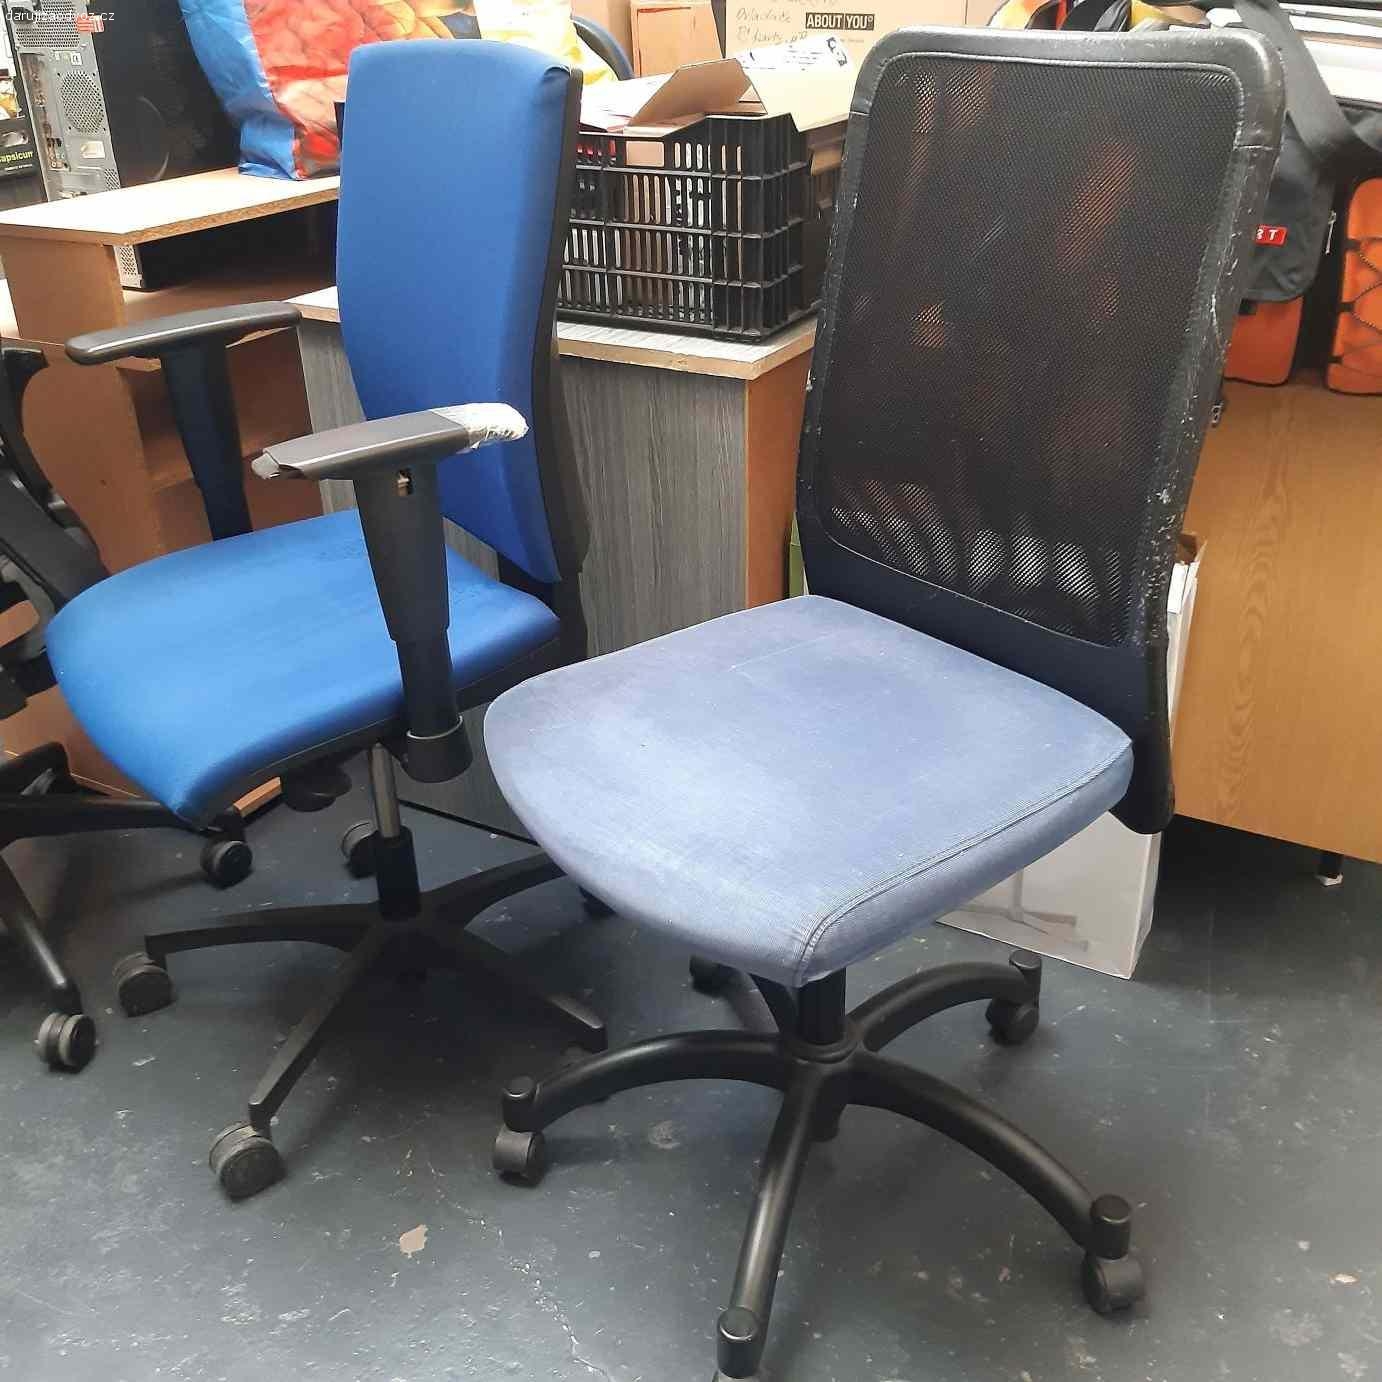 Kancelářské židle již pouze 2 kusy. Daruji za odvoz kancelářské židle, již pouze 2 kusy, a to jasně modrá a koženková černá. Všechny plně funkční, kolečka, nastavování, jeví známky opotřebení, ale žádné zdevastované, potrhané nejsou. U koženkové černé popraskané područky a sedák, látkové jsou bez poškození. My jsme obdrželi také darem , když jsme začínali a pomohly nám, tak pouštíme rádi dál ať přinesou ještě užitek. Do začínající kanceláře, do dílny, studia, zkušebny nebo do garáže apod. vhodné.
Odvoz možný po dohodě prakticky kdykoliv, ve všední den i o víkendu.